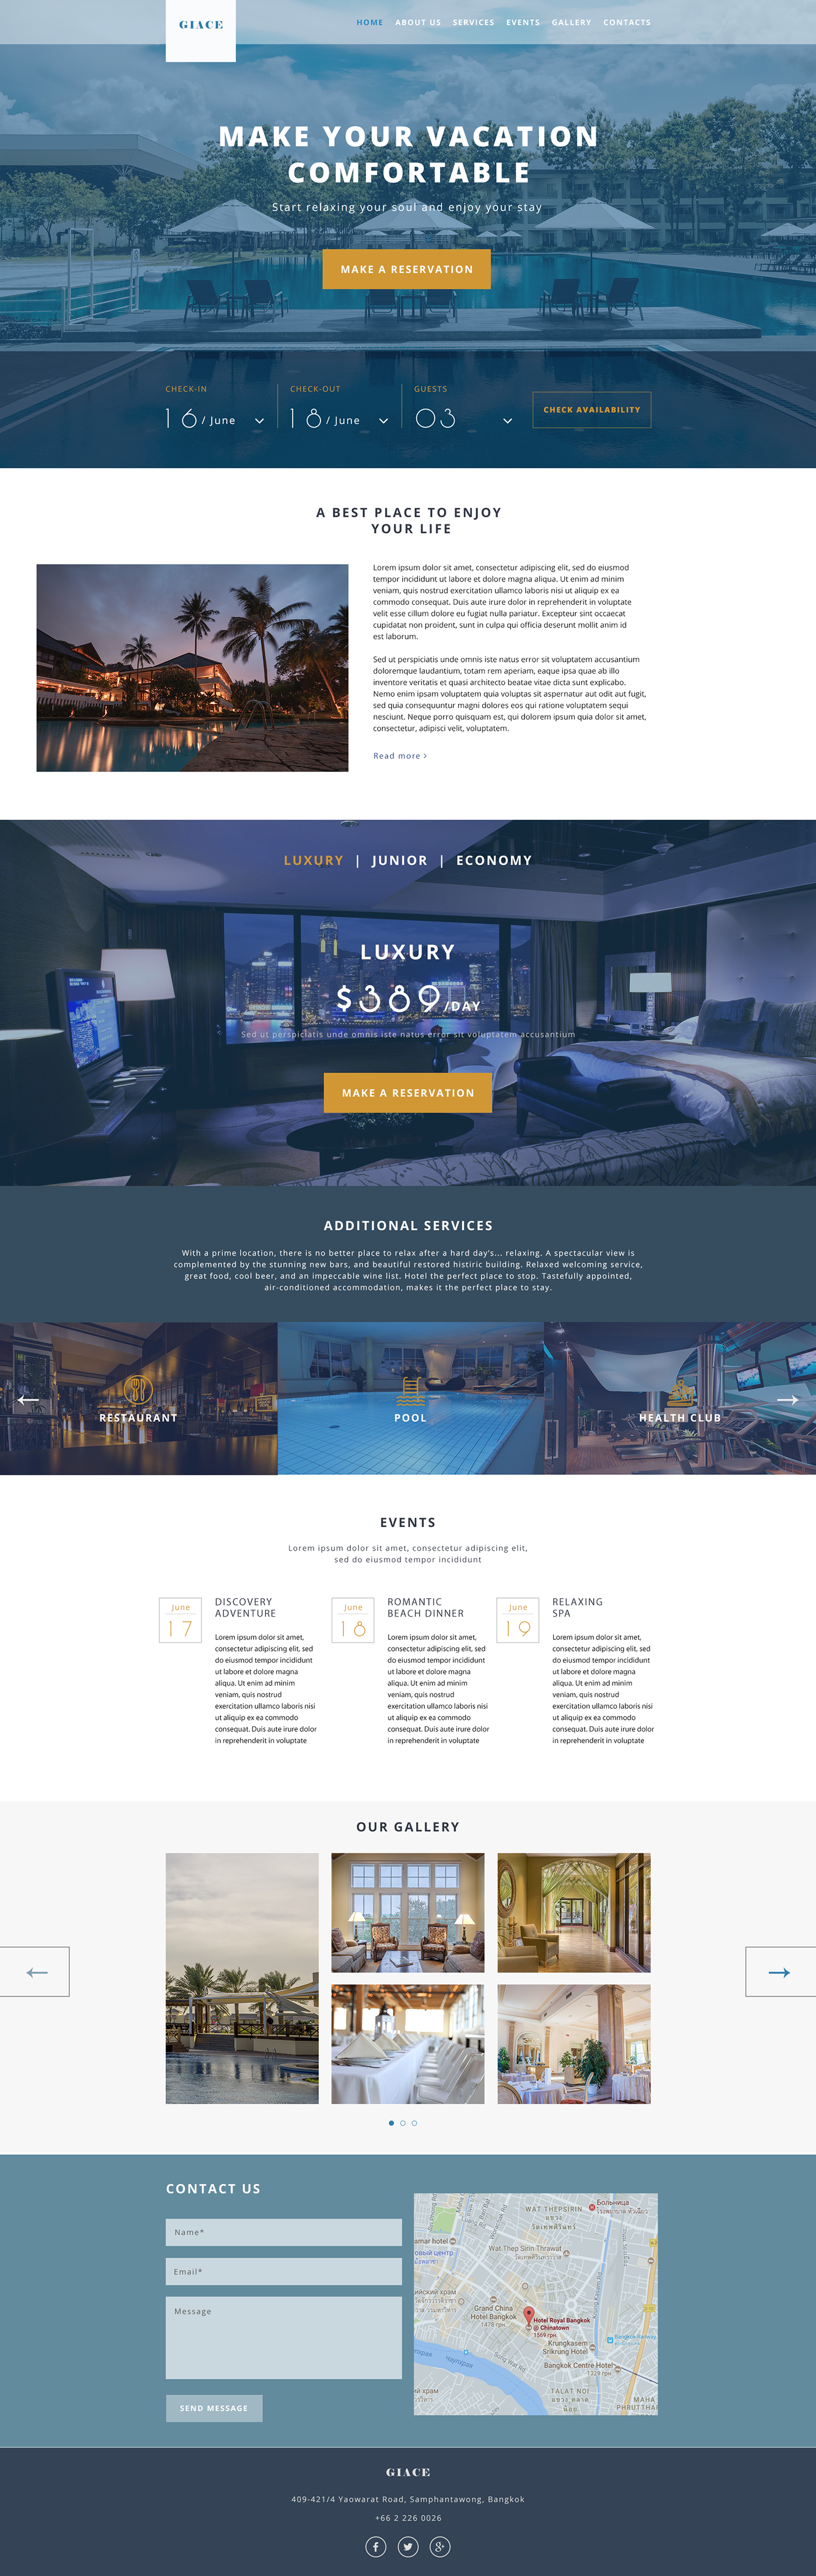 Website hotel corporate Web Design 